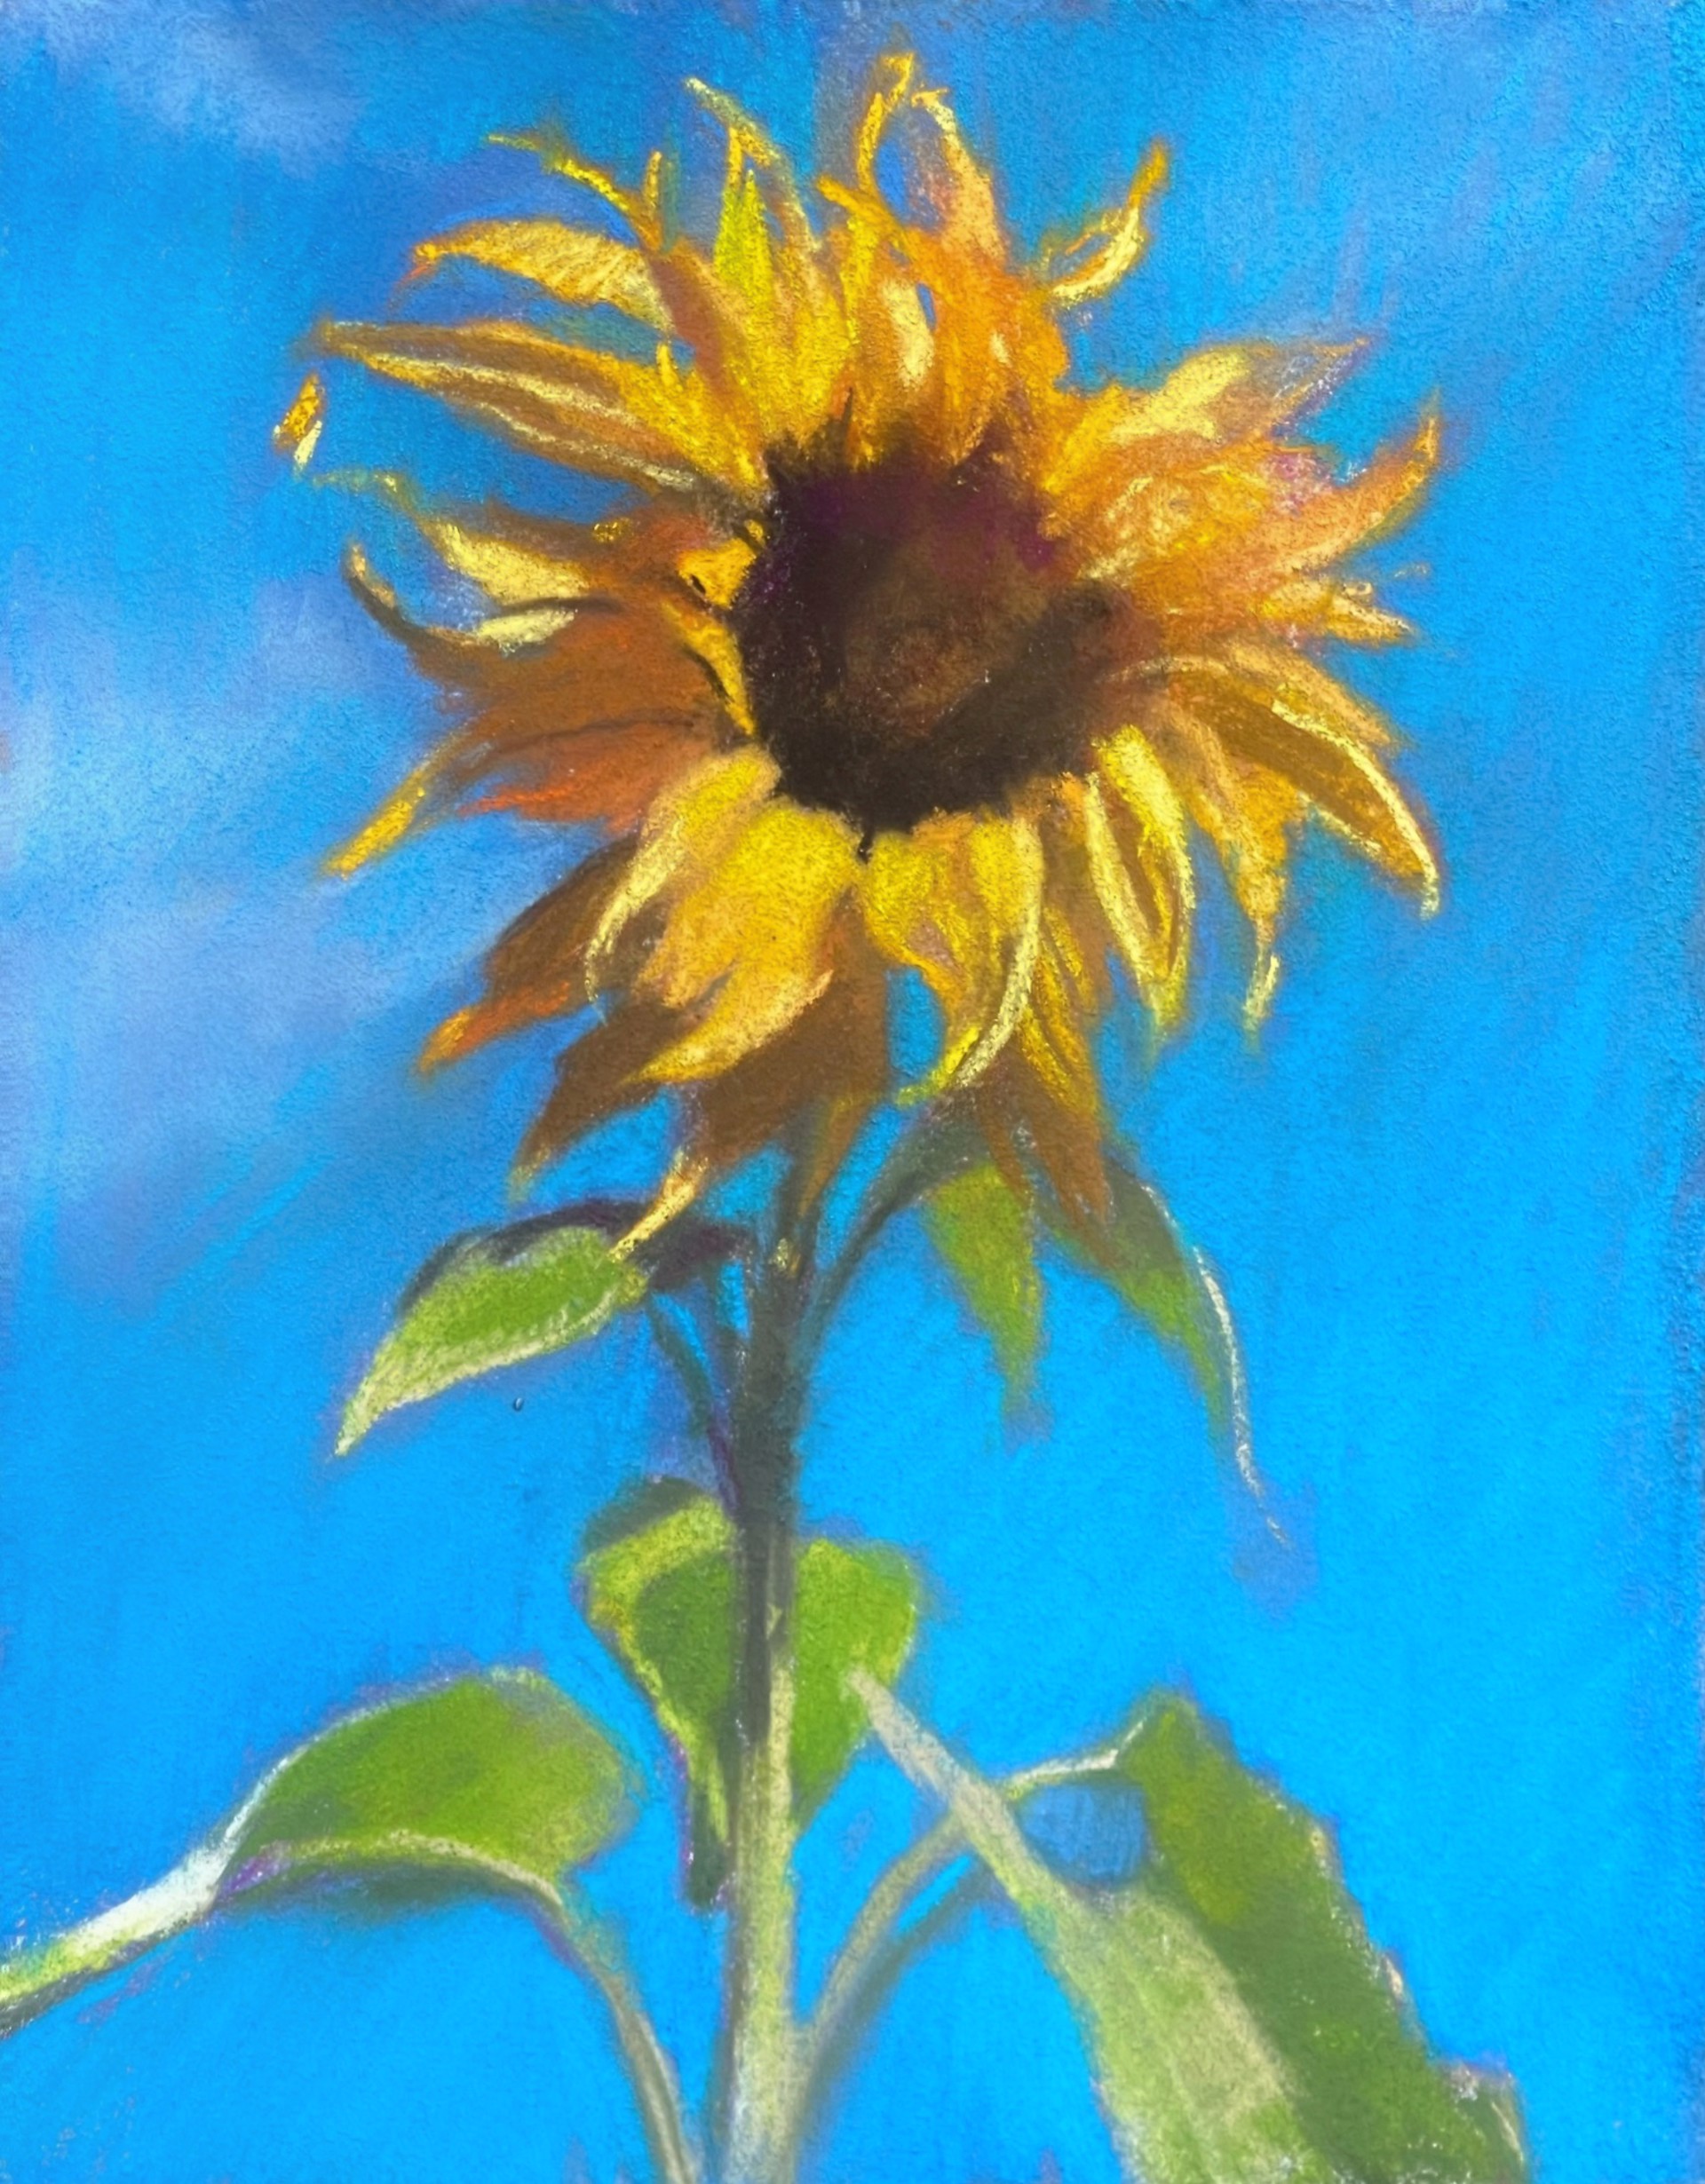 Sedona Sunflower by Bruce A Gómez